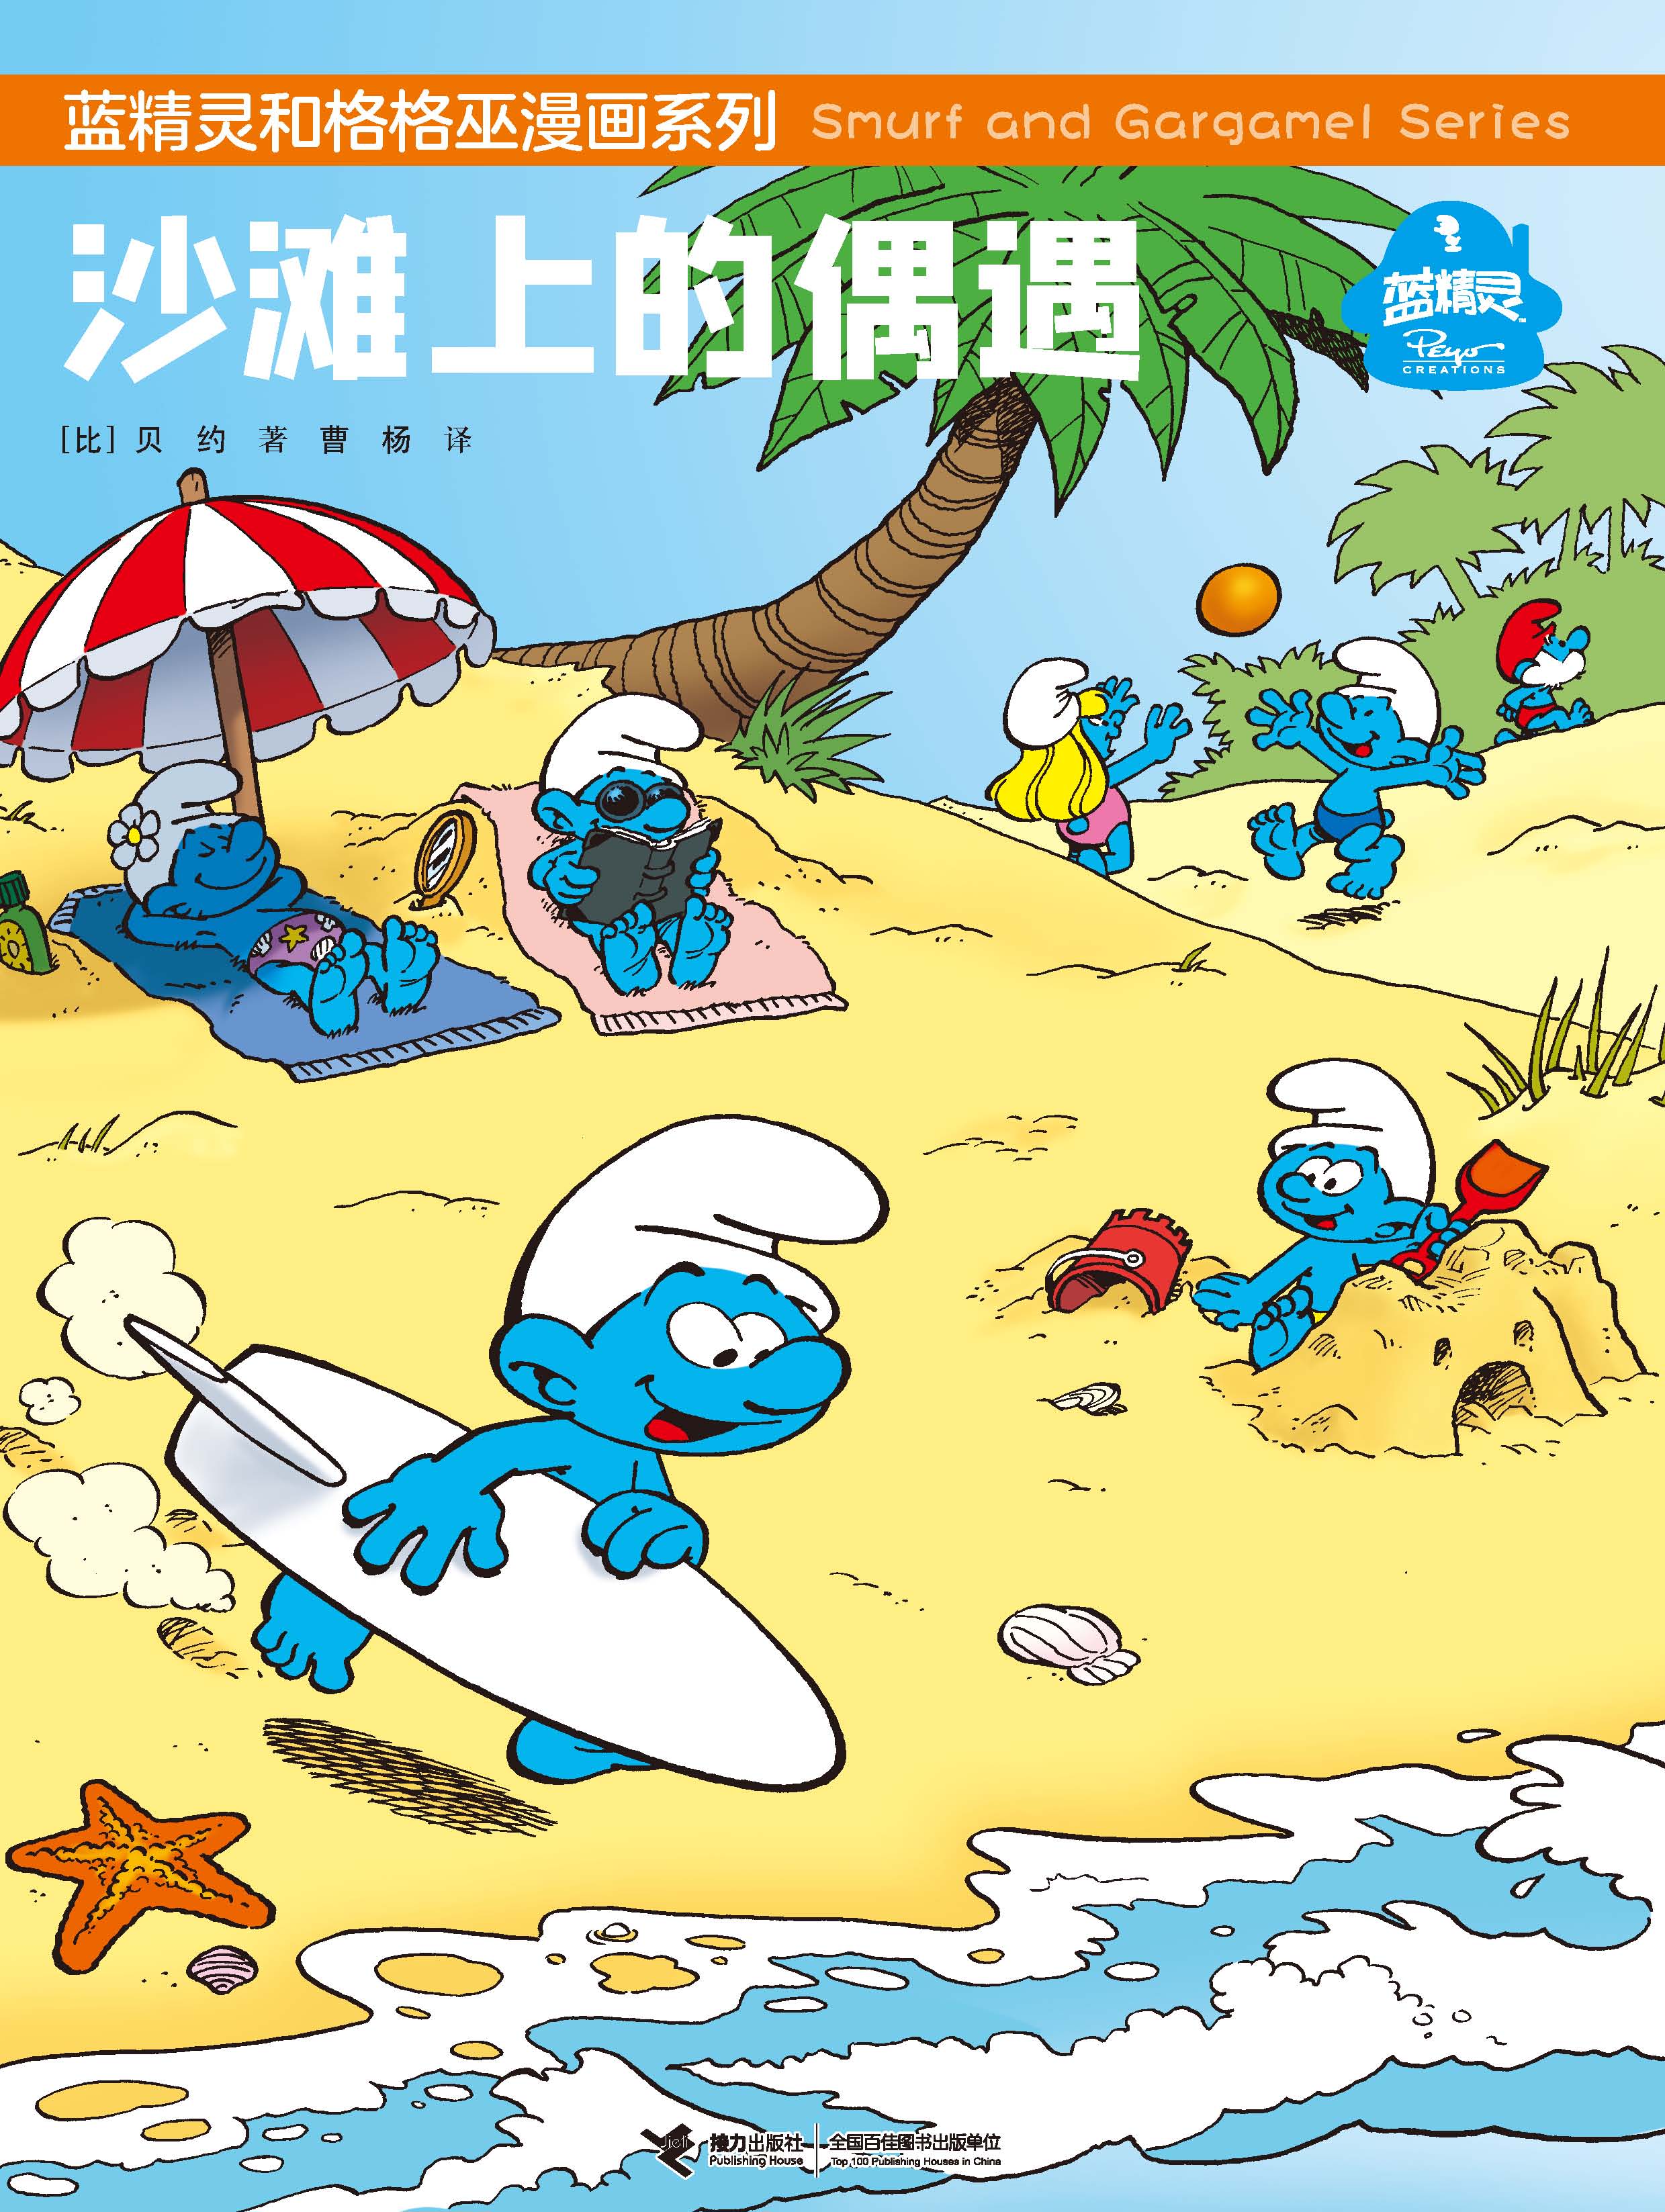 蓝精灵和格格巫漫画系列:沙滩上的偶遇